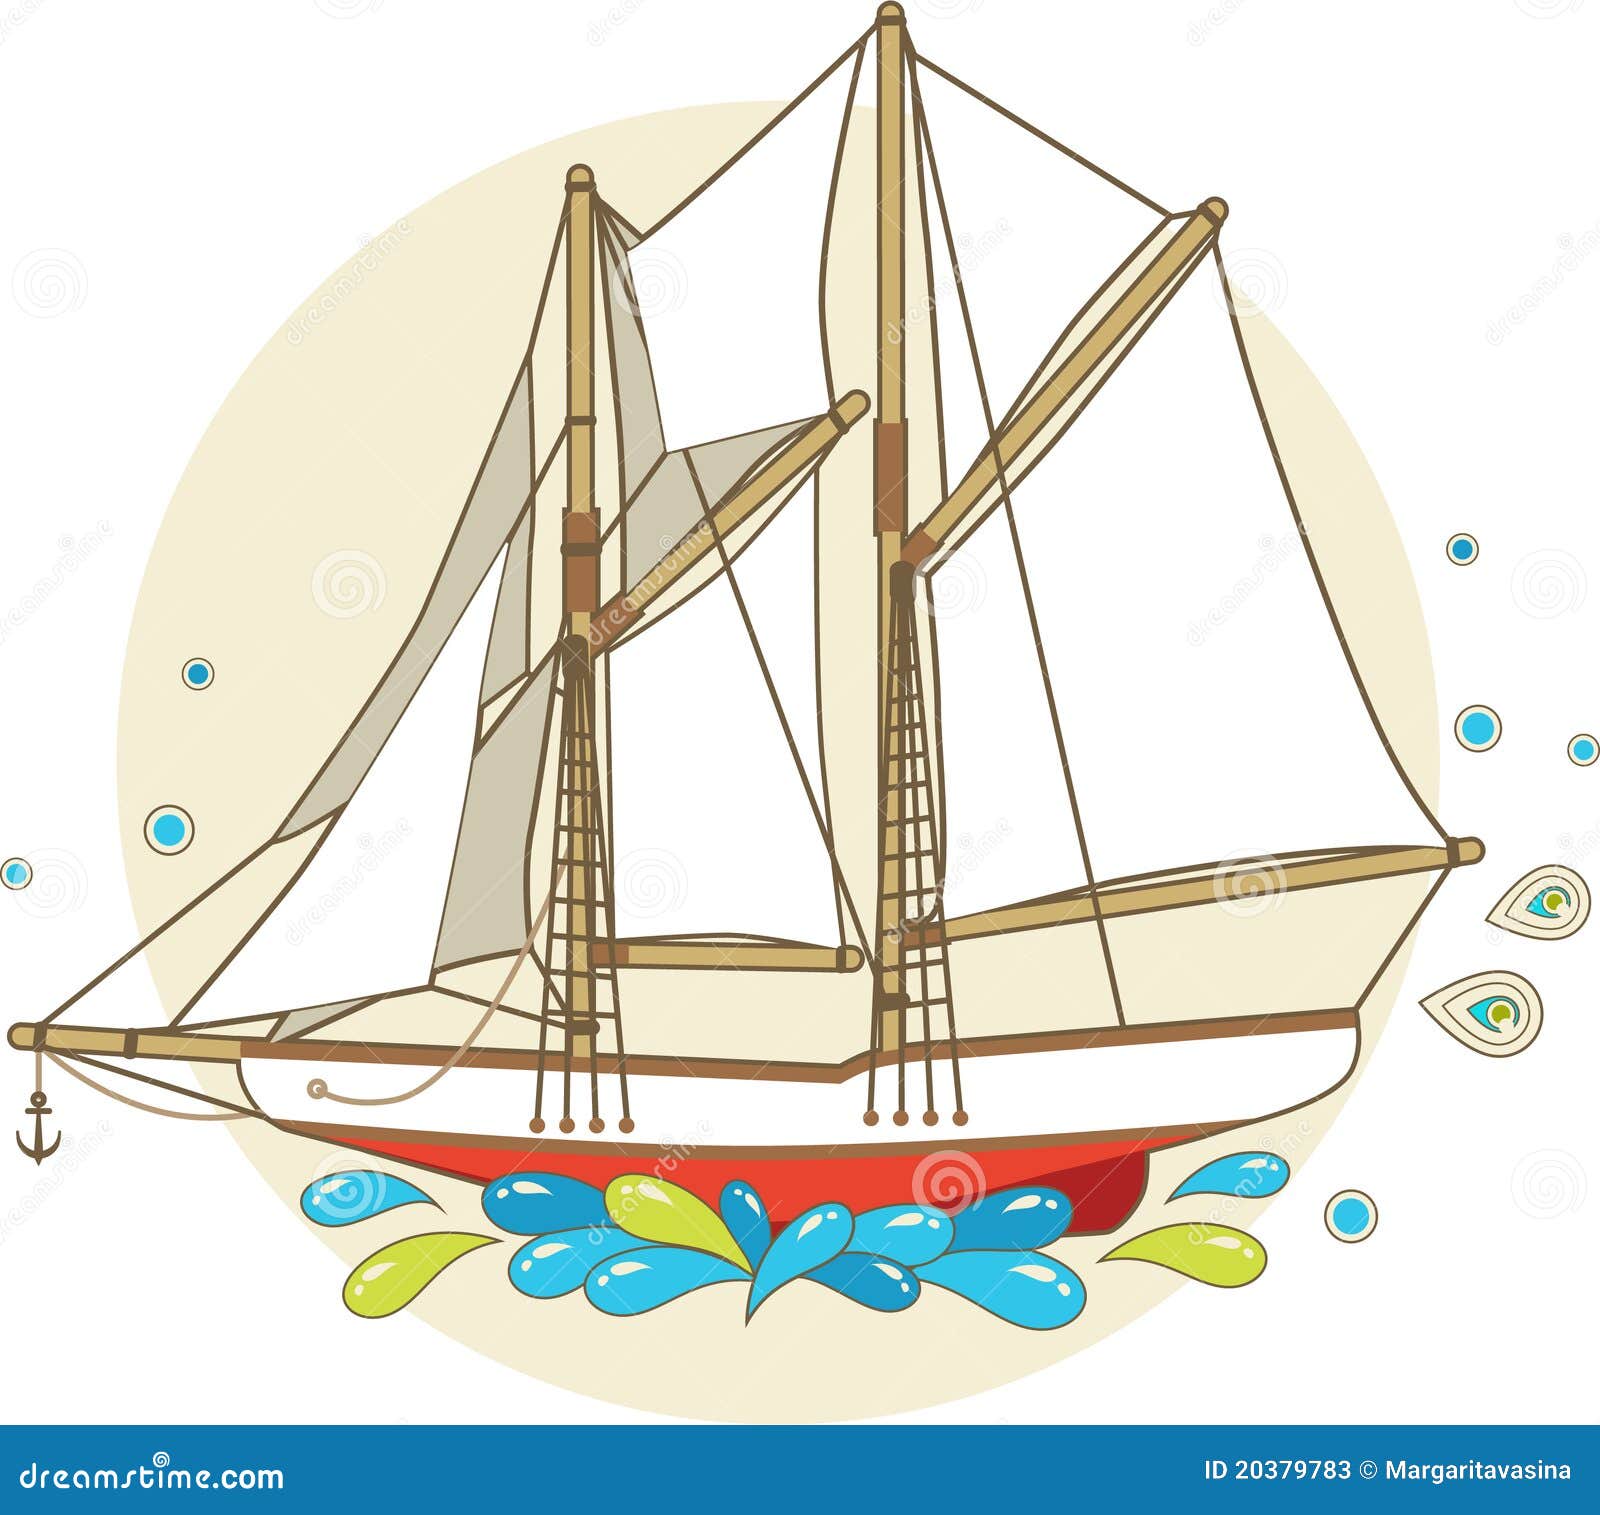 Cartoon Sailing Ship Stock Photos - Image: 20379783